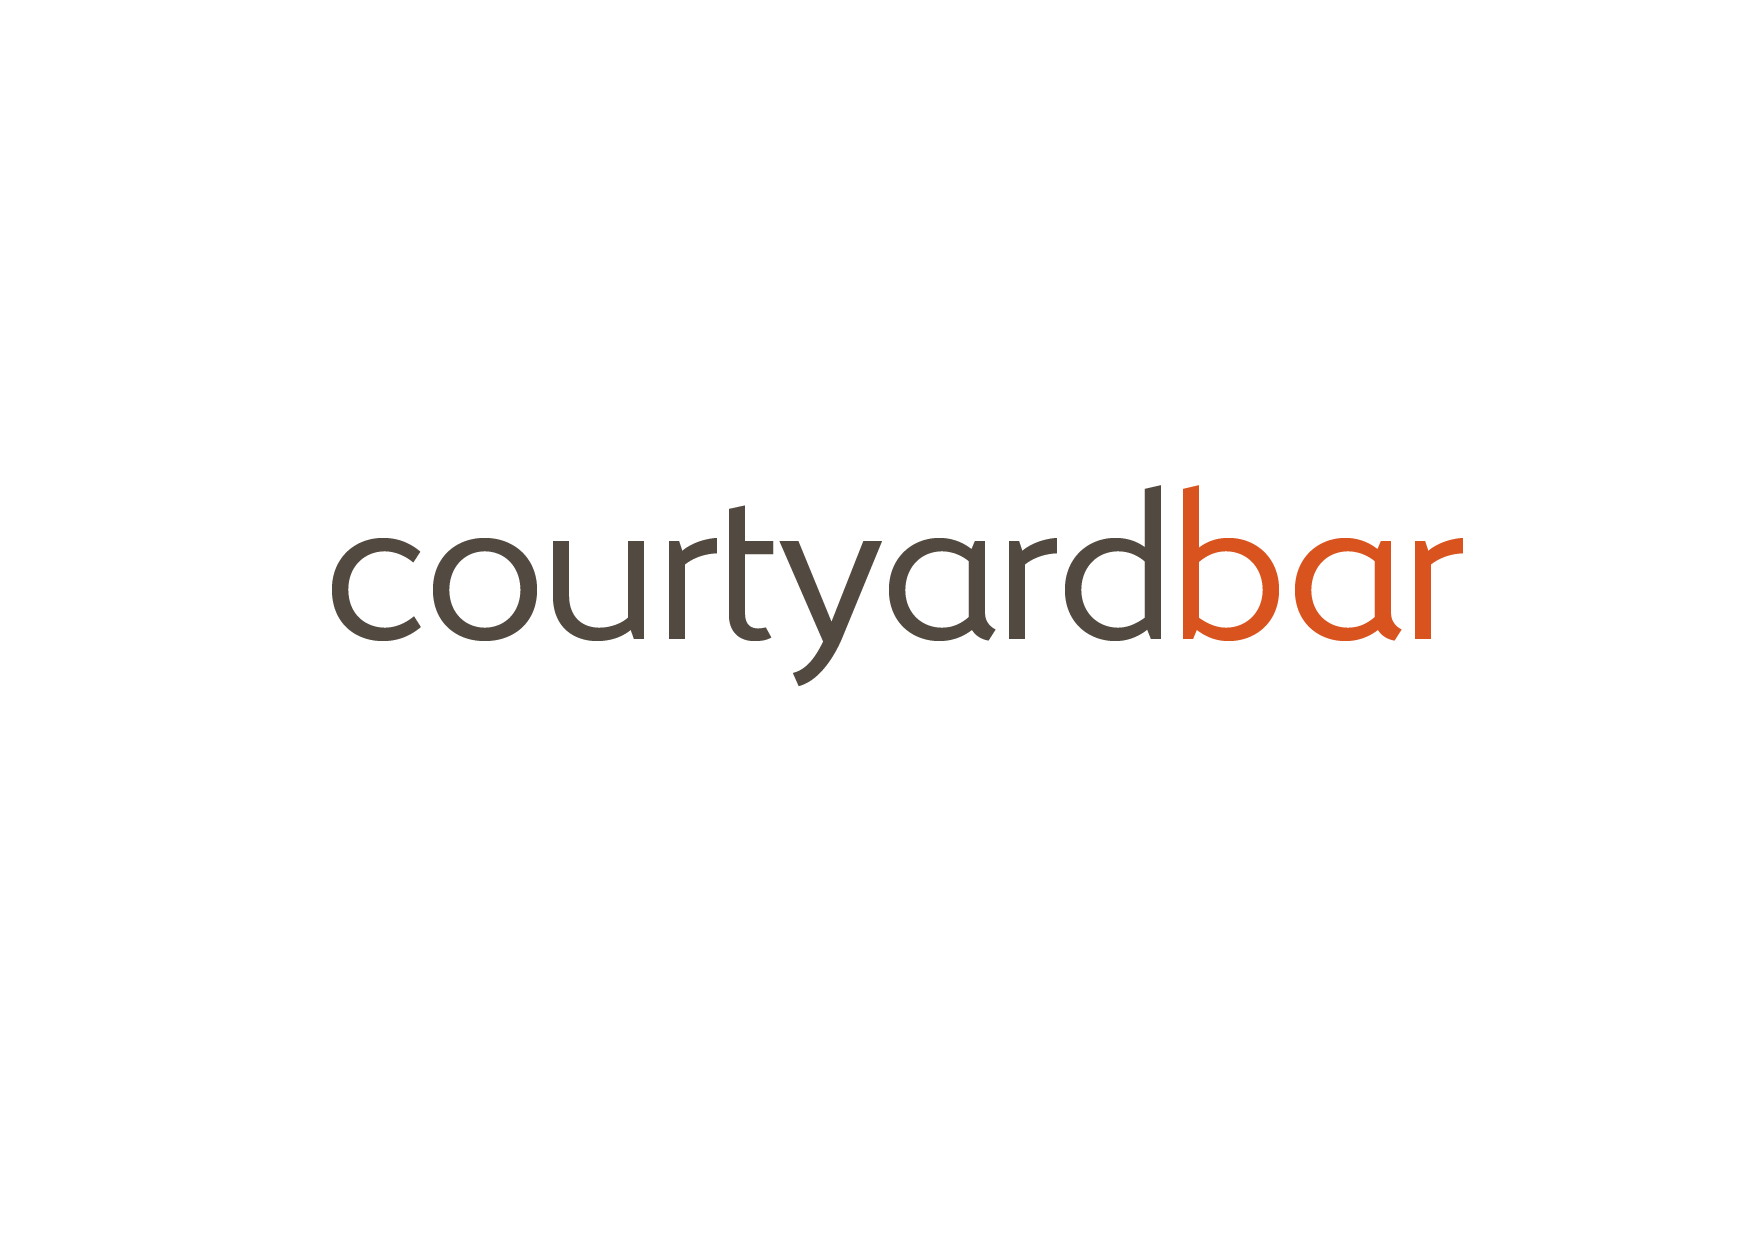 Courtyard Bar